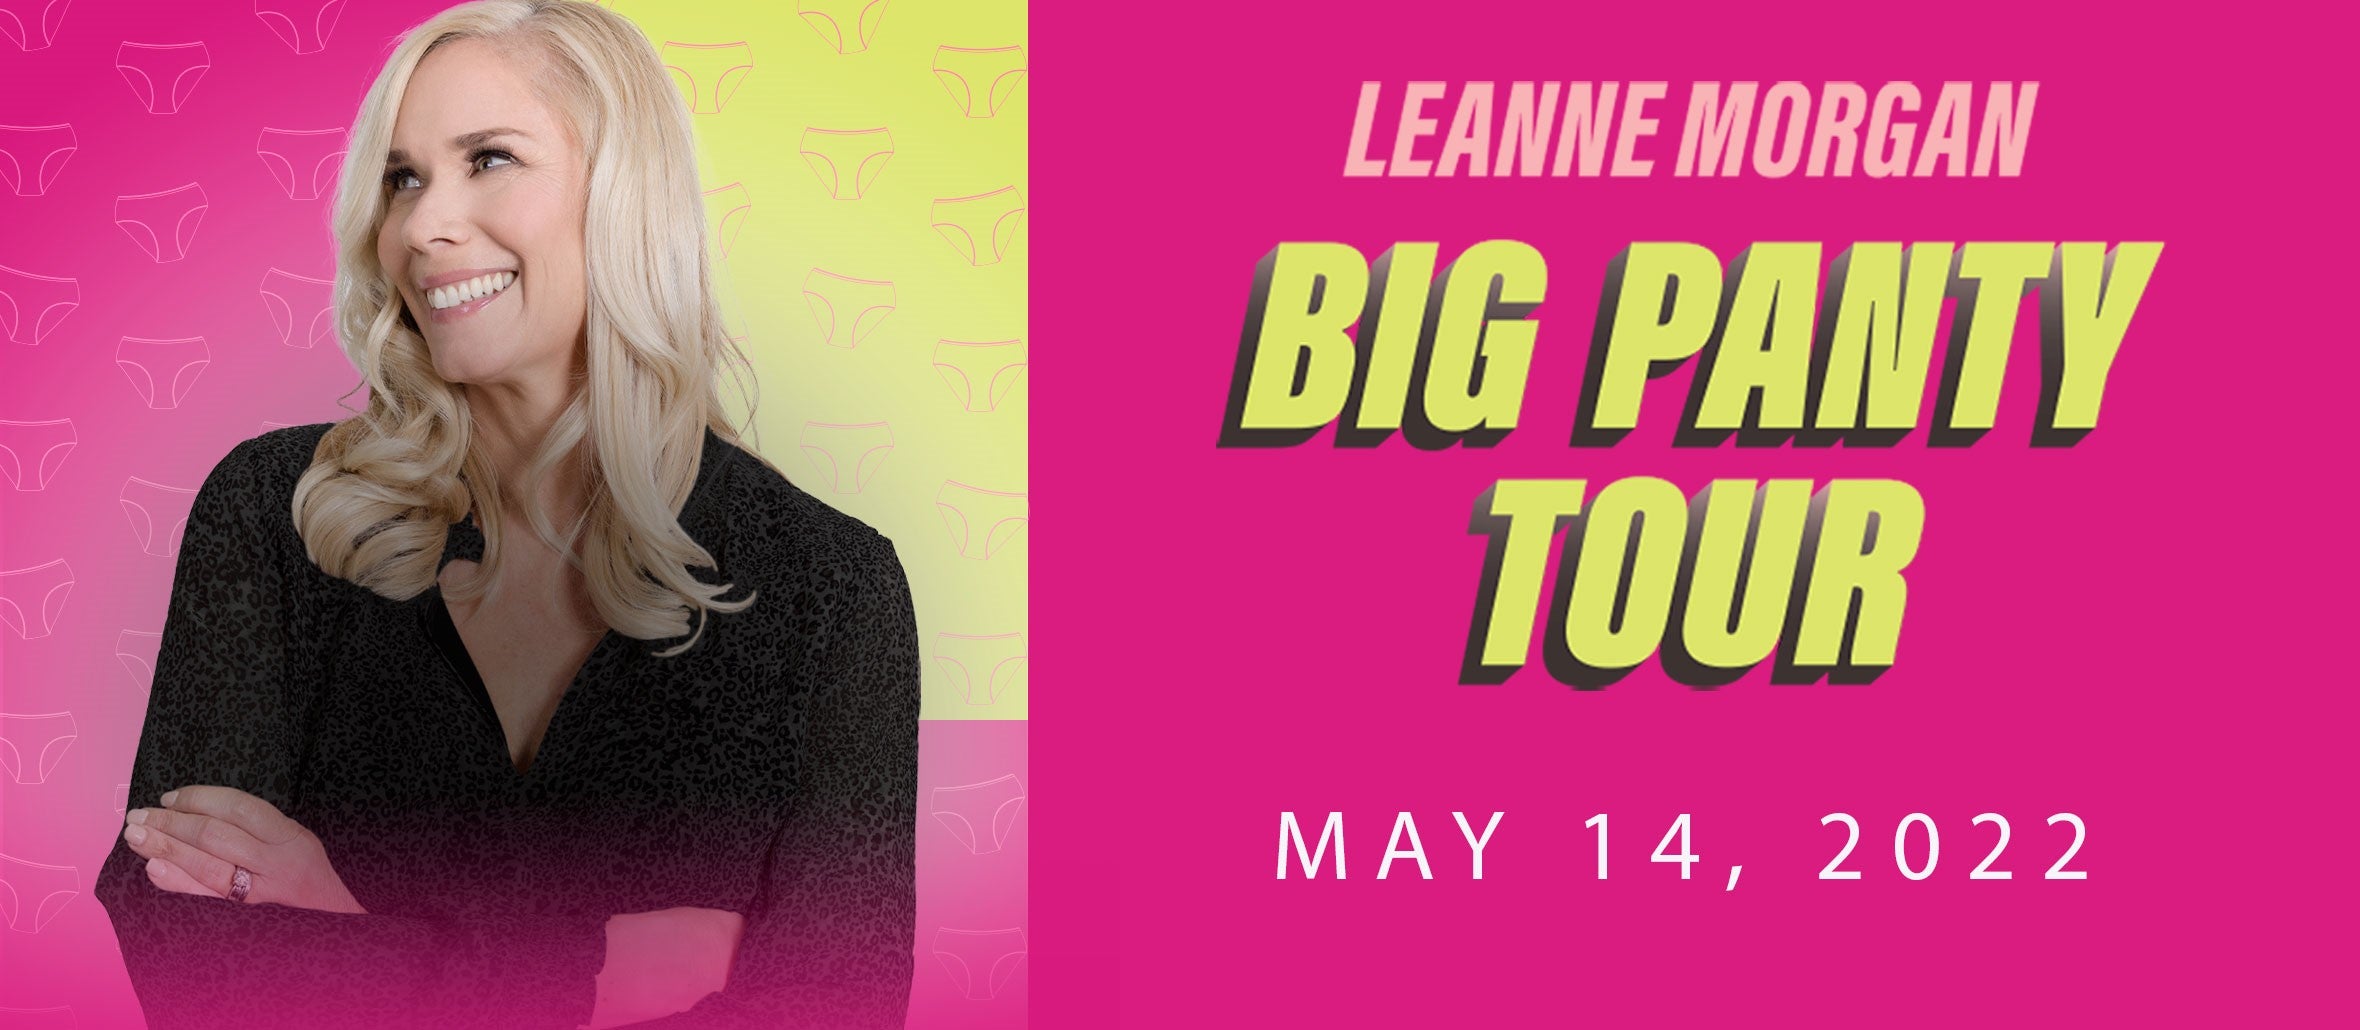 Leanne Morgan: Big Panty Tour